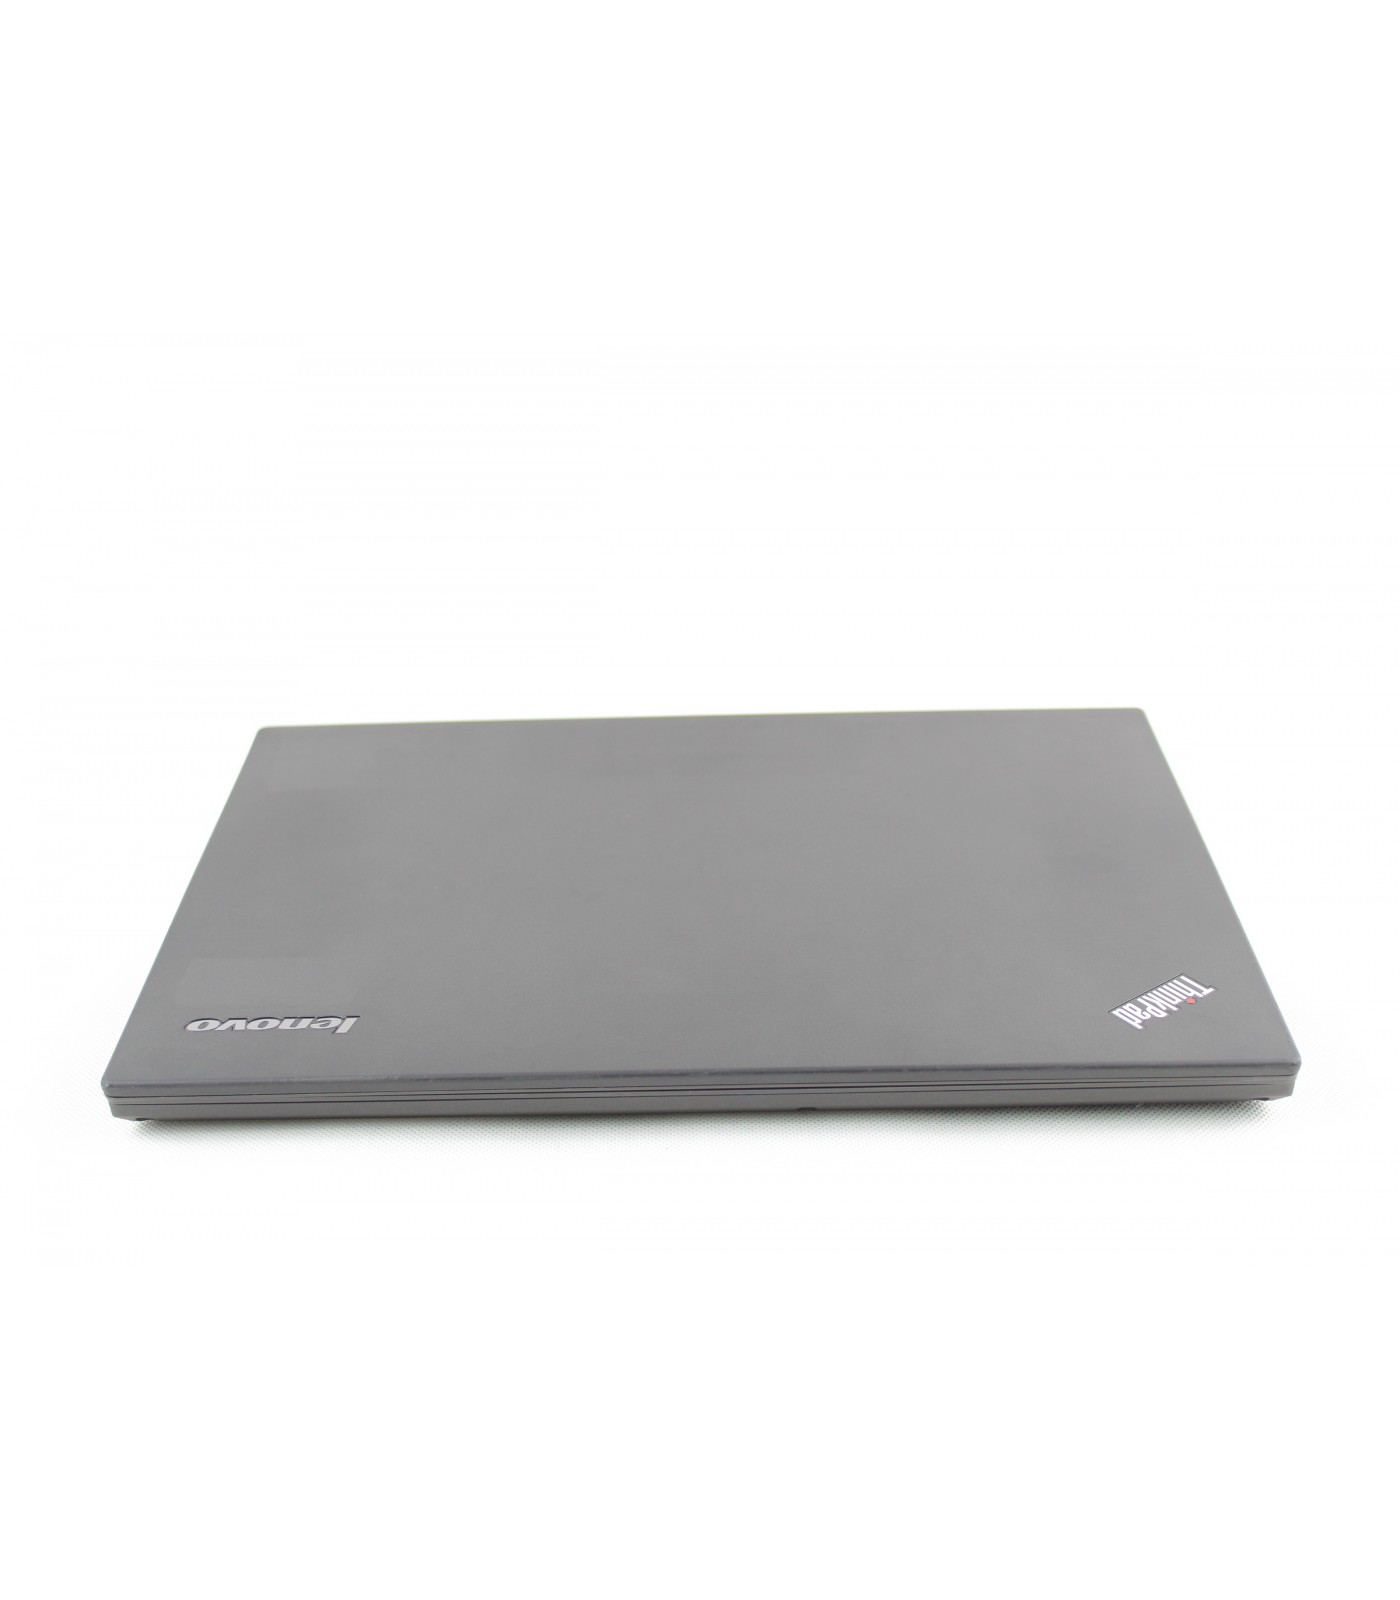 Poleasingowy laptop Lenovo ThinkPad T440 z Intel Core i5-4300u w Klasie A